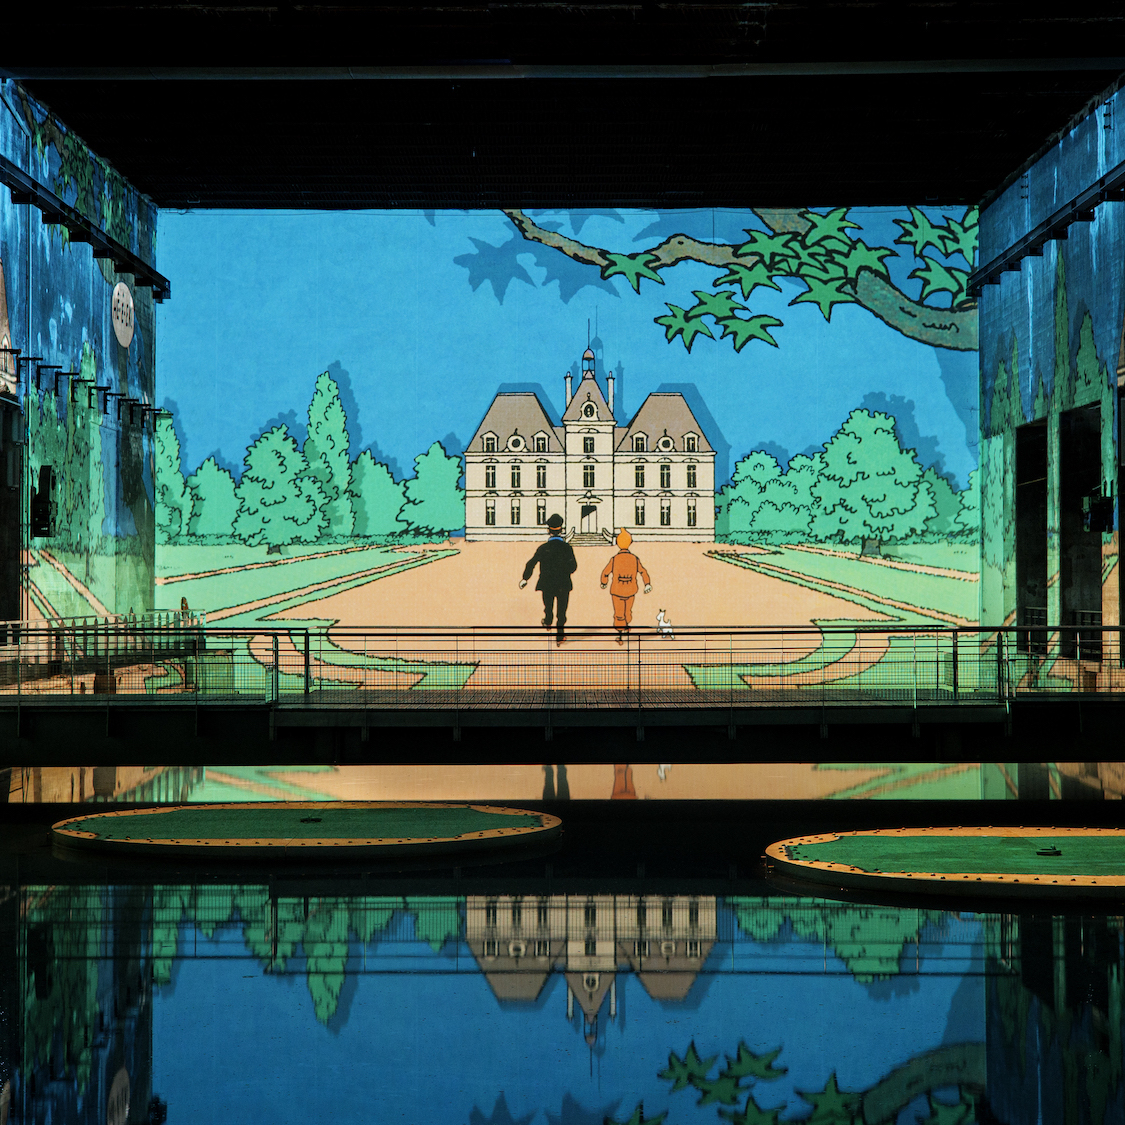 L'exposition immersive Tintin fait des merveilles aux Carrières des  Lumières en Provence